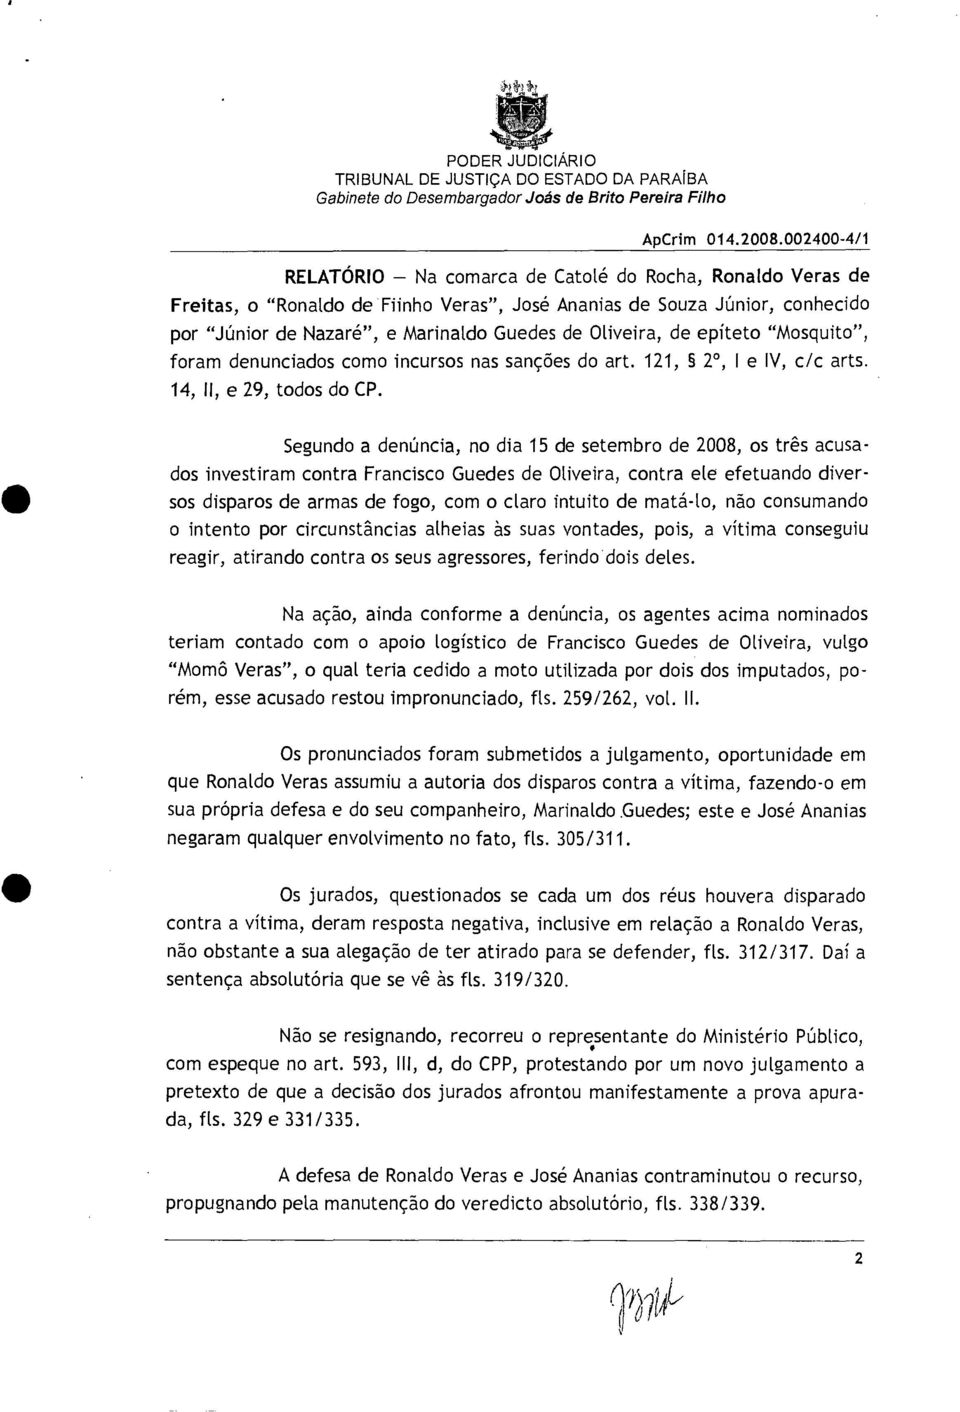 Segundo a denúncia, no dia 15 de setembro de 2008, os três acusados investiram contra Francisco Guedes de Oliveira, contra ele efetuando diversos disparos de armas de fogo, com o claro intuito de